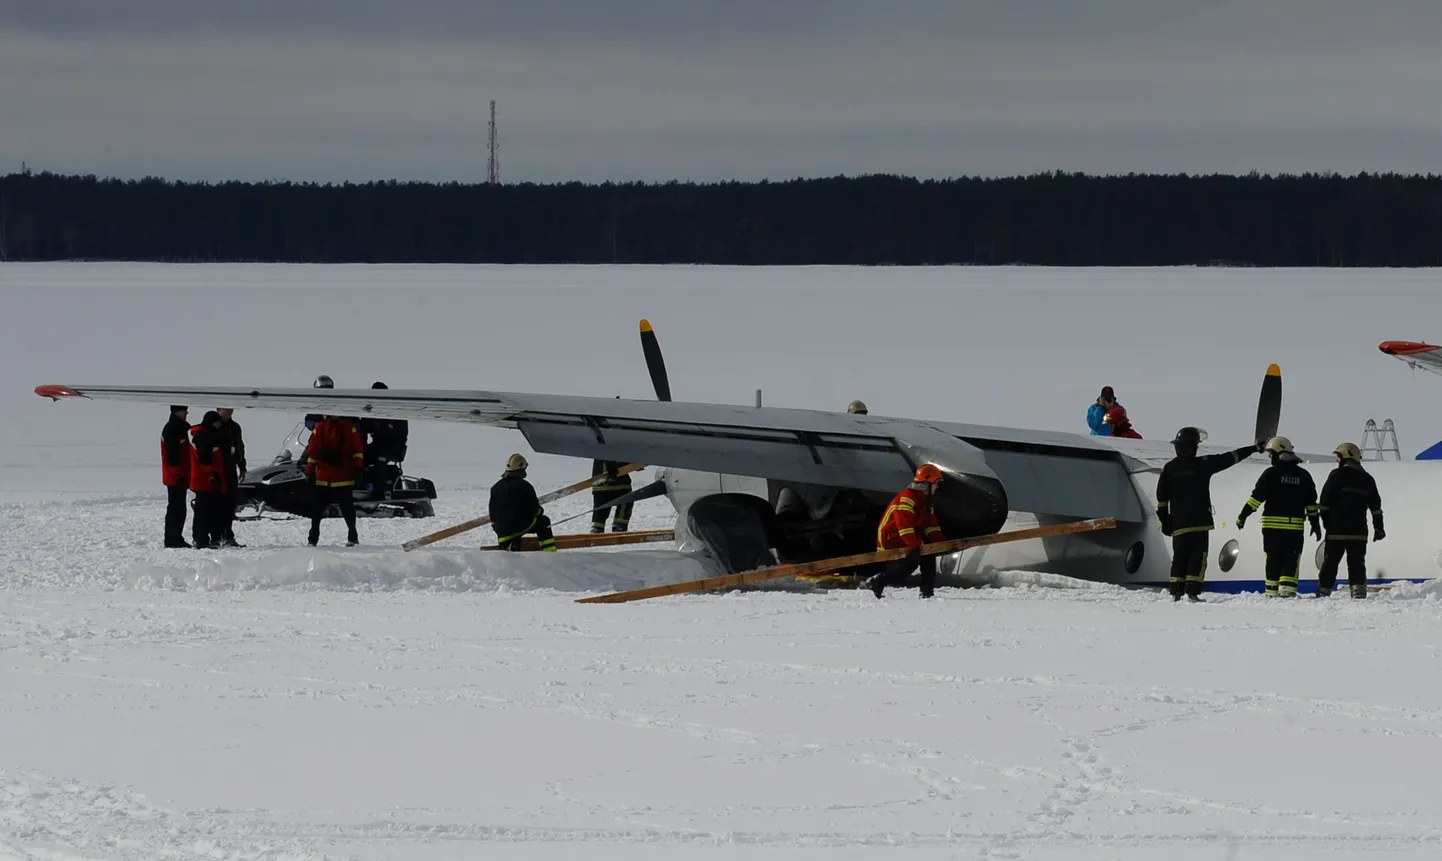 Спасатели укрепляют самолет брусьями перед началом буксировки.